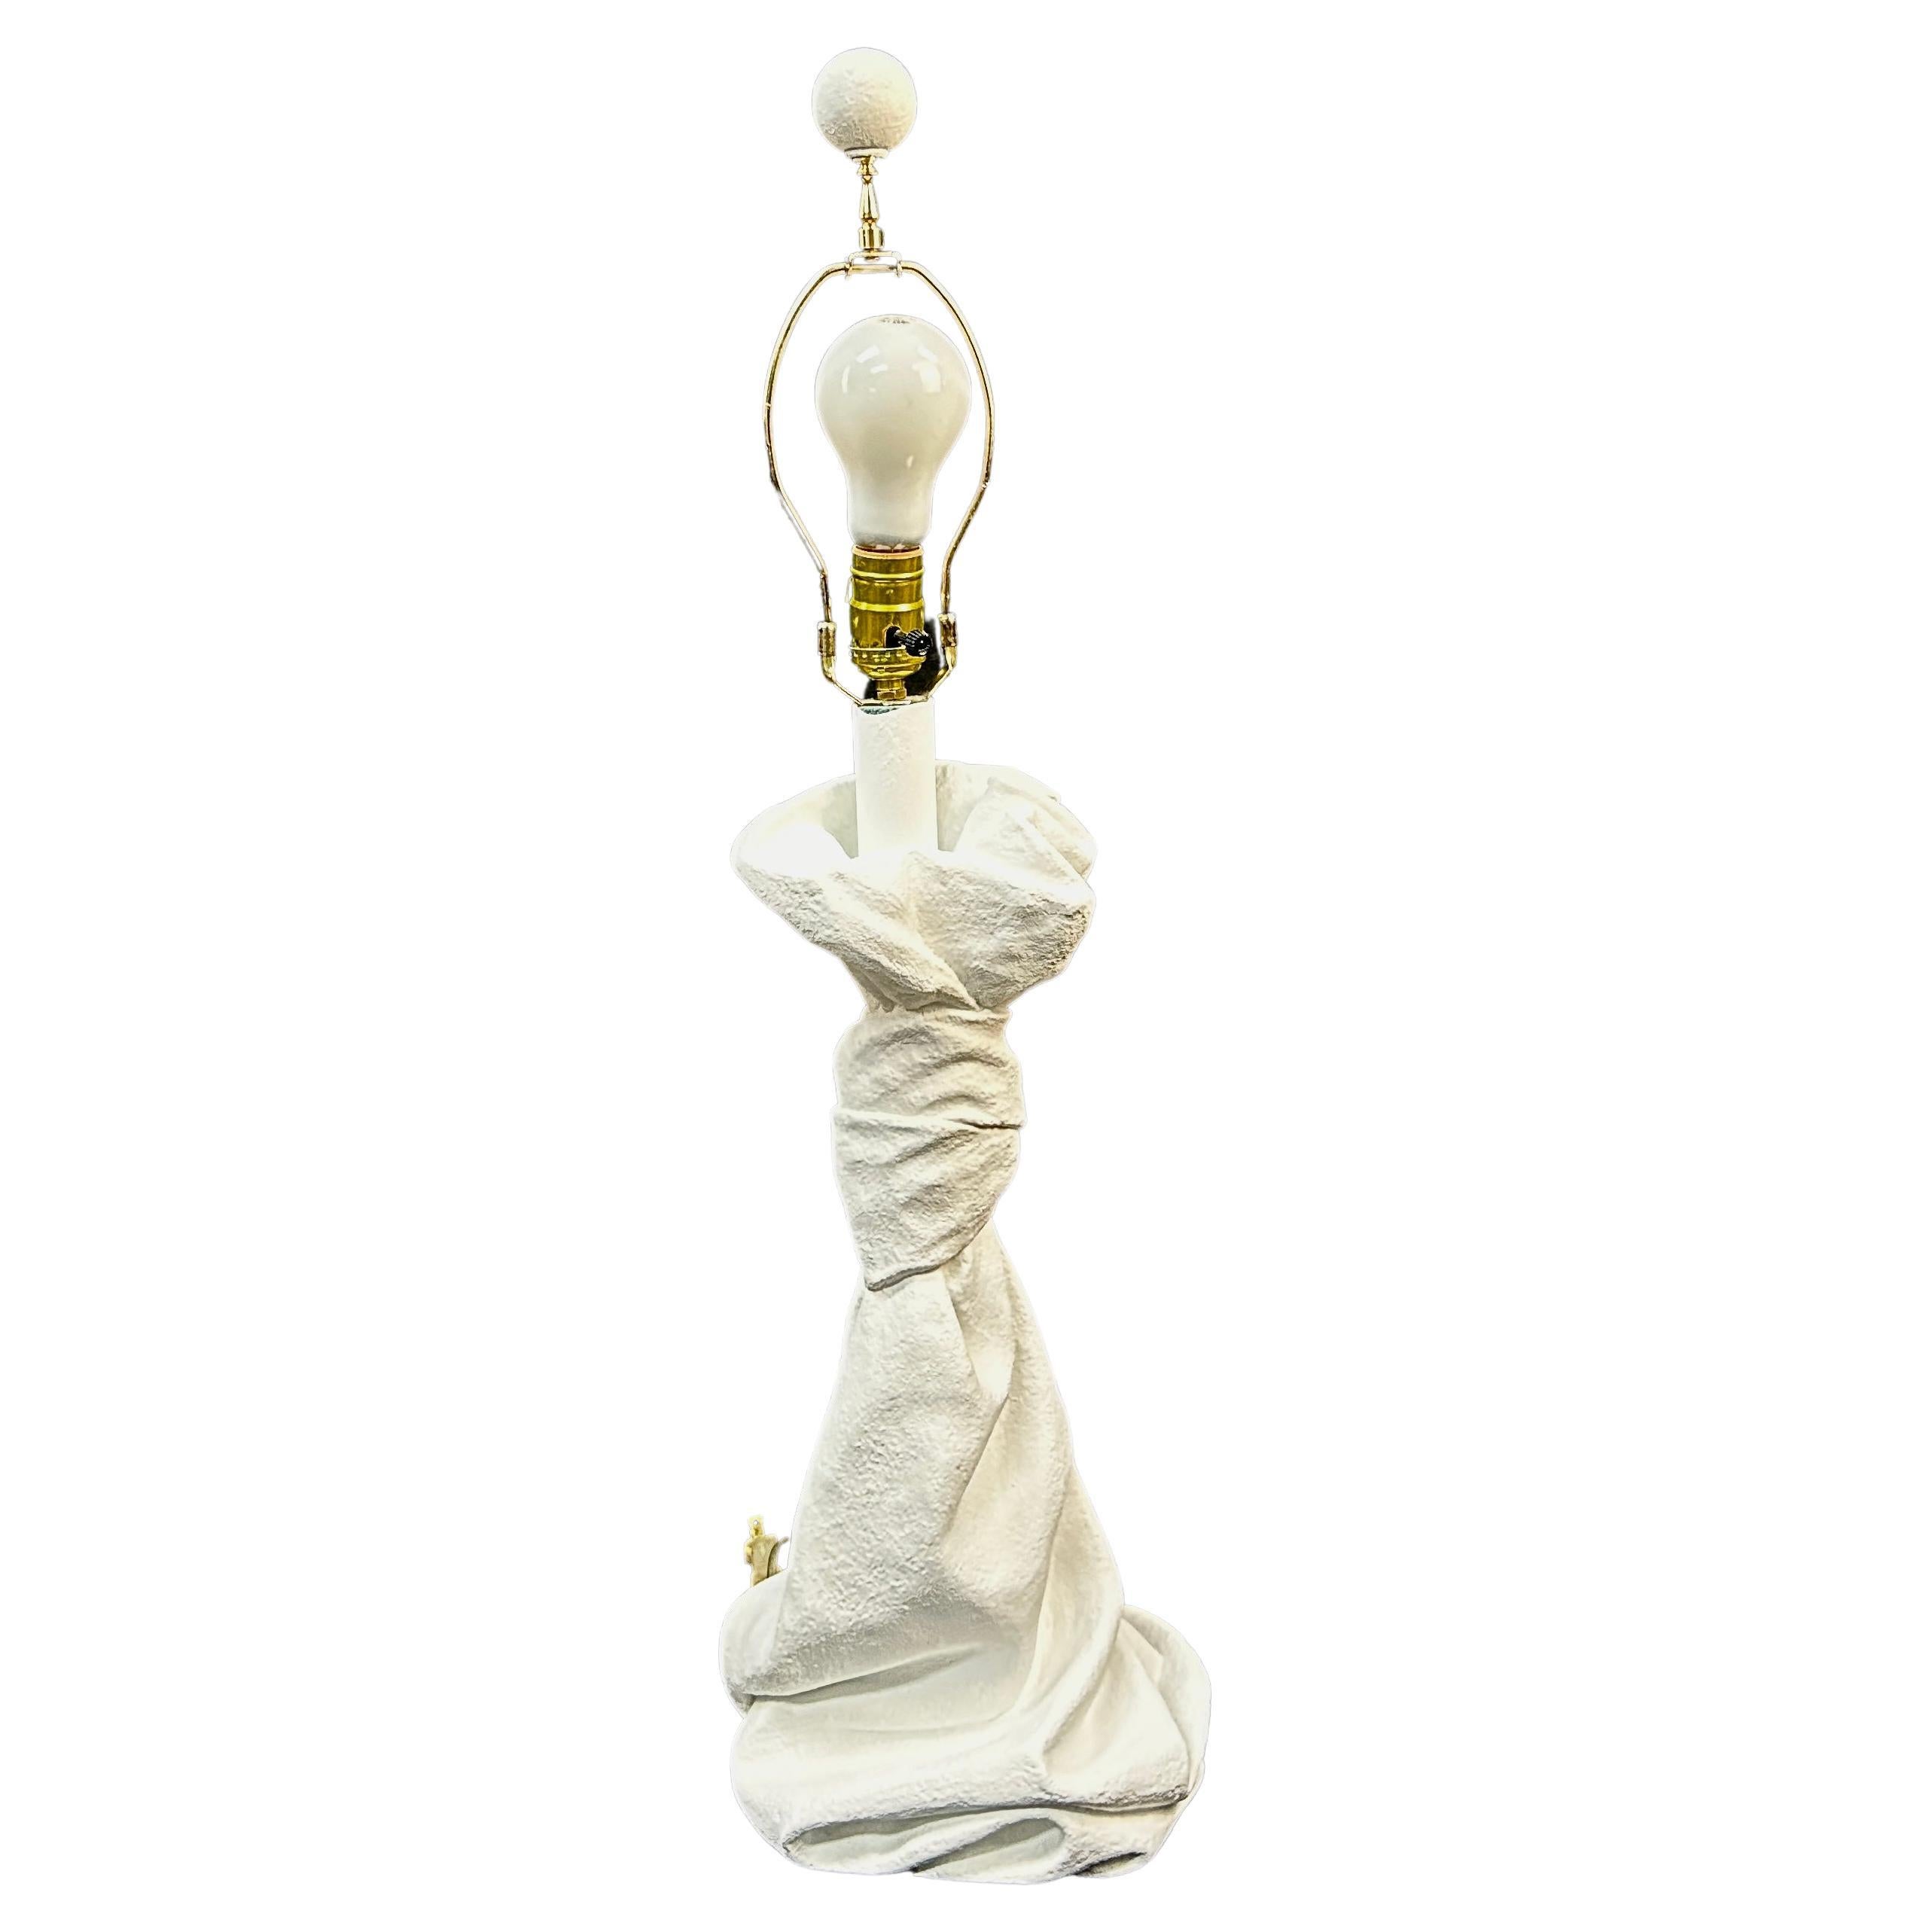 Lampe de table en plâtre du 20e siècle dans le style John Dickinson des années 1970. Drapée et nouée, cette lampe unique semble sculpturale dans sa conception. La lampe comprend la harpe et l'original  épi de faîtage en plâtre. Cette lampe lourde et